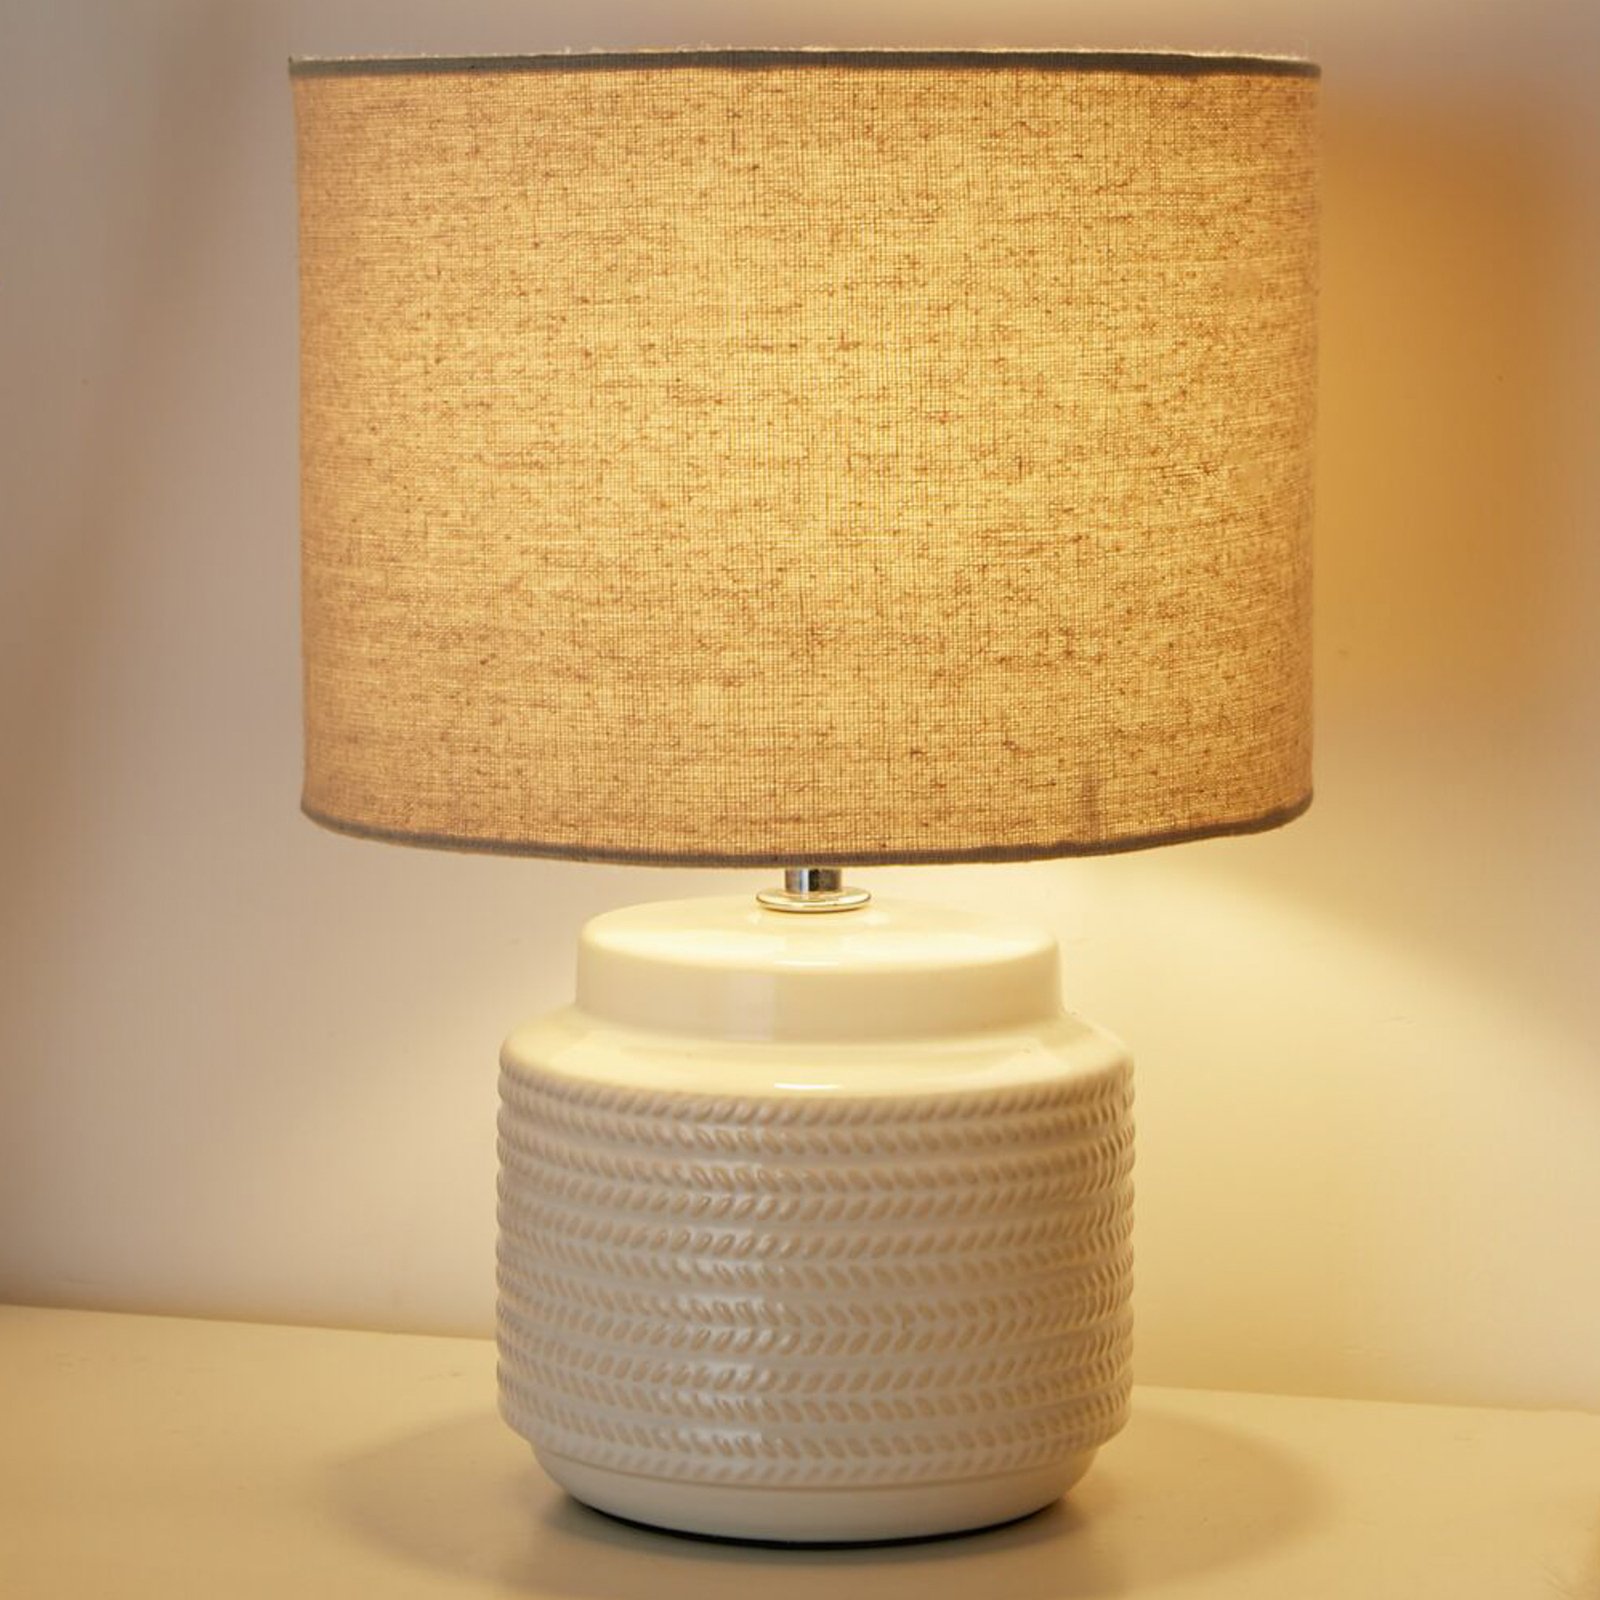 Pauleen Bright Soul bordslampa med keramikfot